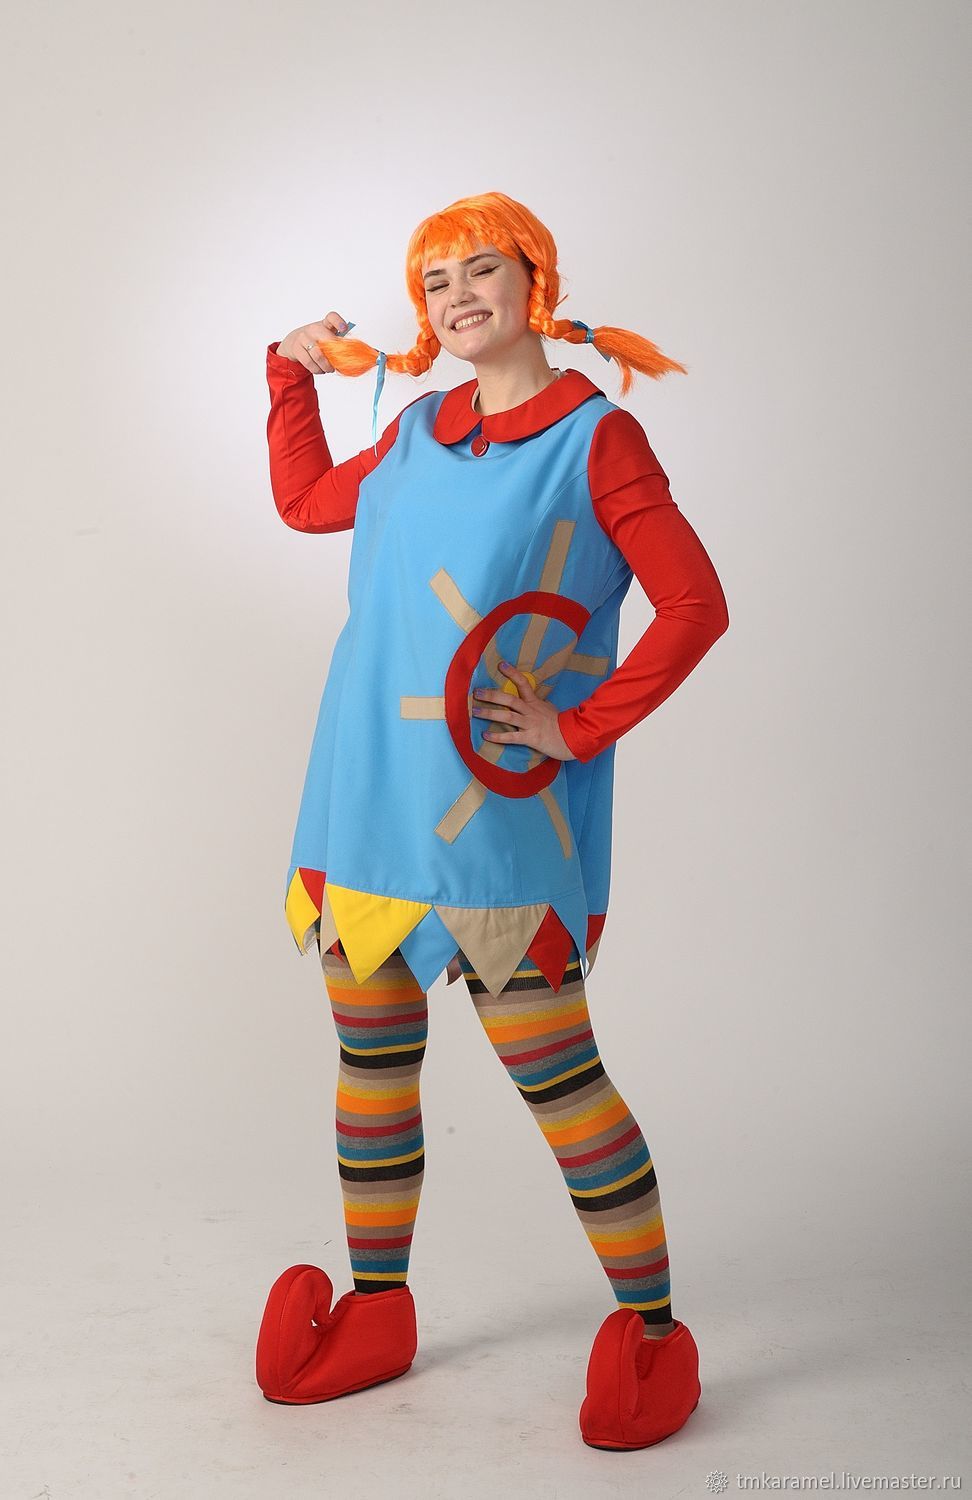 Пеппи Длинный чулок: костюм для маленьких нарядных детей